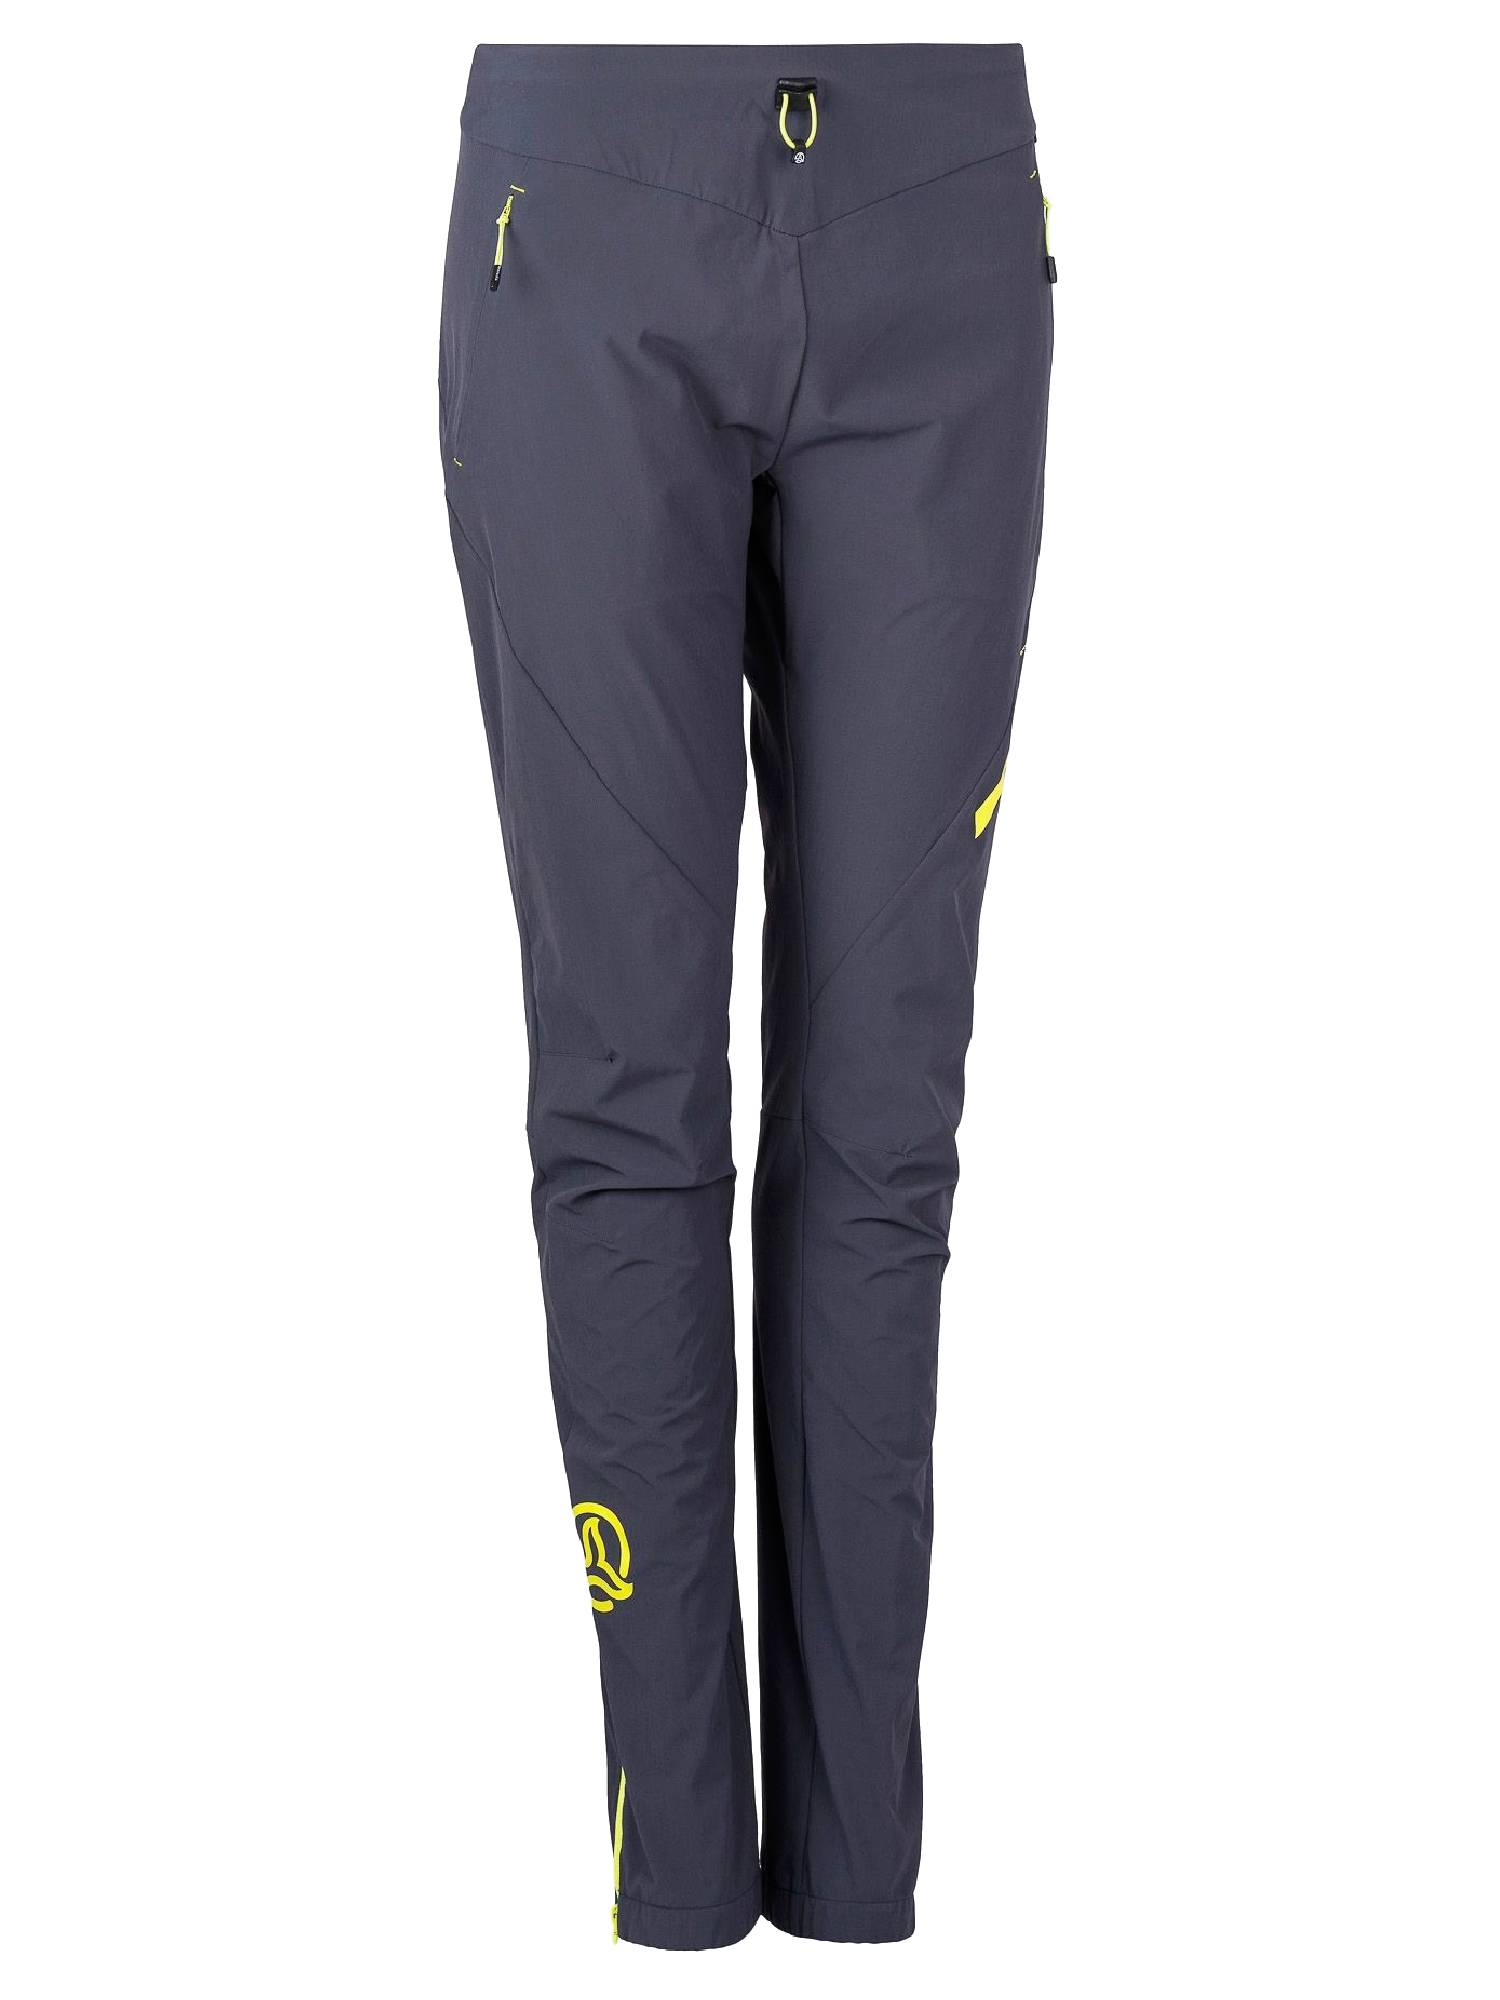 Спортивные брюки женские Ternua Outrun Pt W серые S